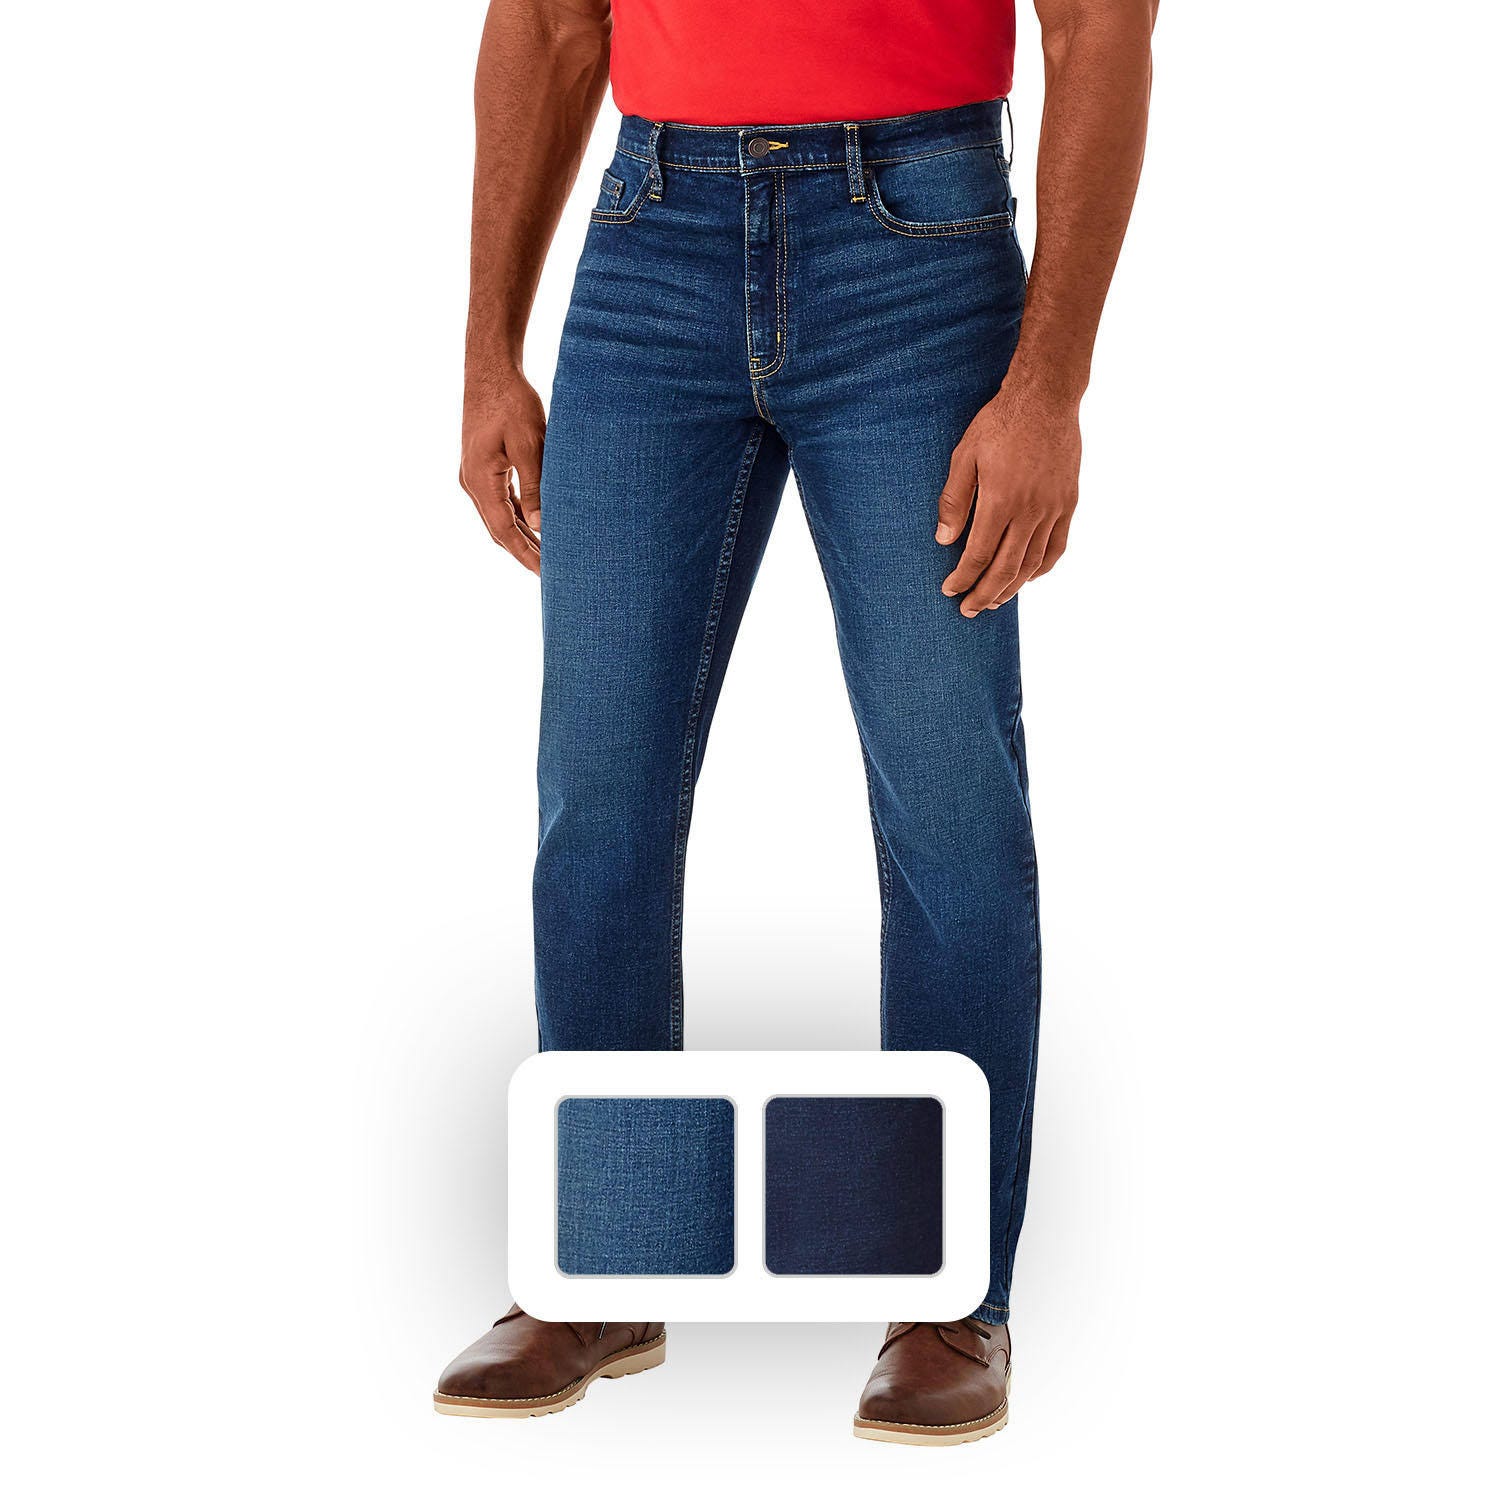 Premium Stretch Denim Jeans for Men - Medium Wash, 34x30 | Image